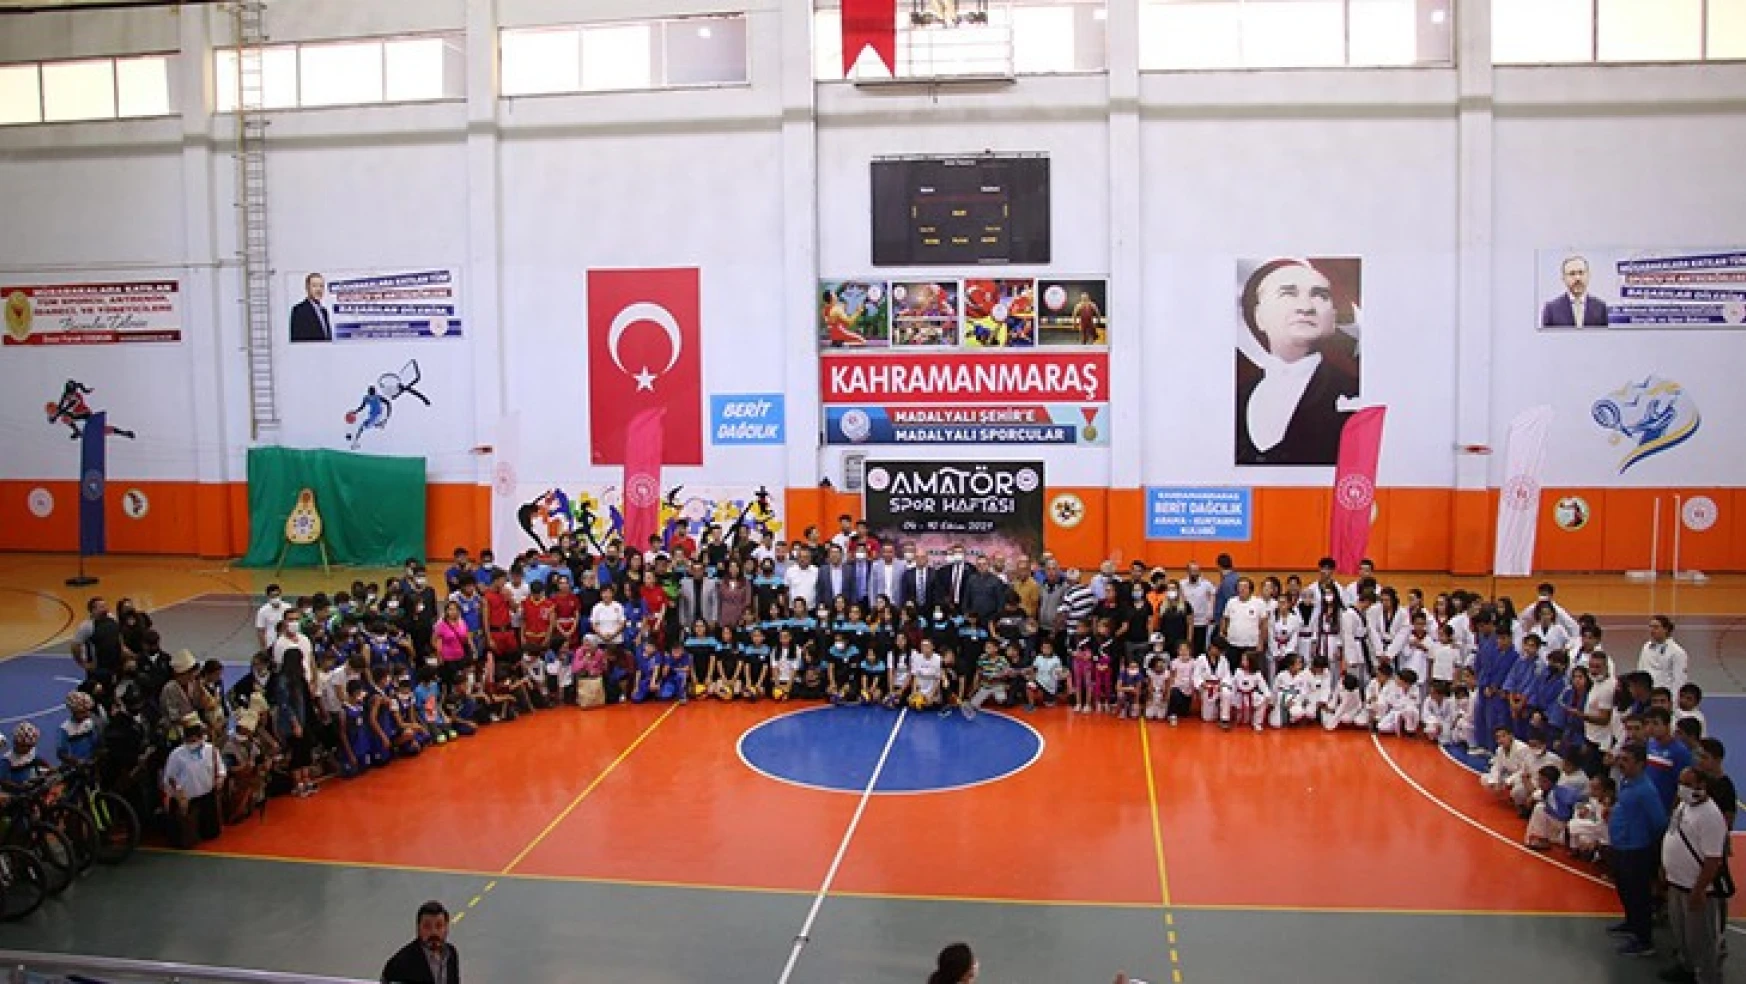 Kahramanmaraş'ta Amatör Spor Haftası kutlamaları düzenlenen törenle başladı